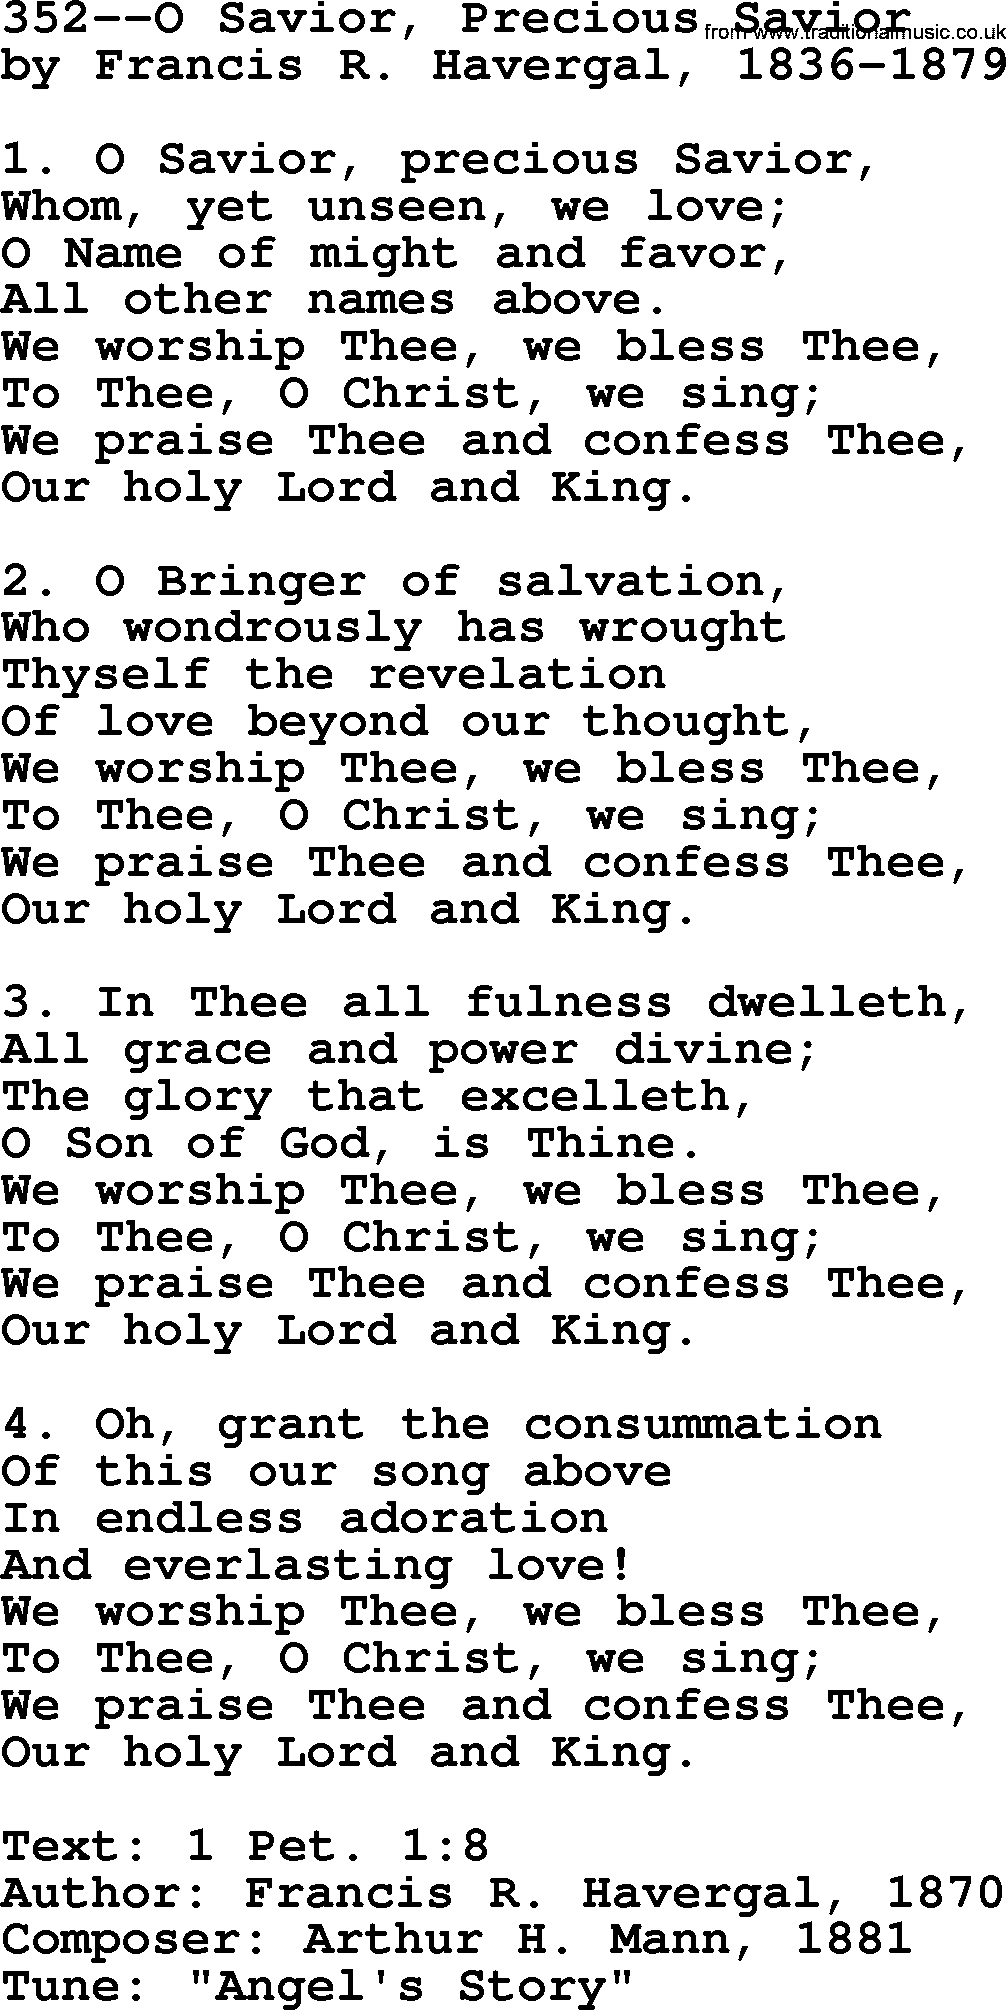 Lutheran Hymn: 352--O Savior, Precious Savior.txt lyrics with PDF